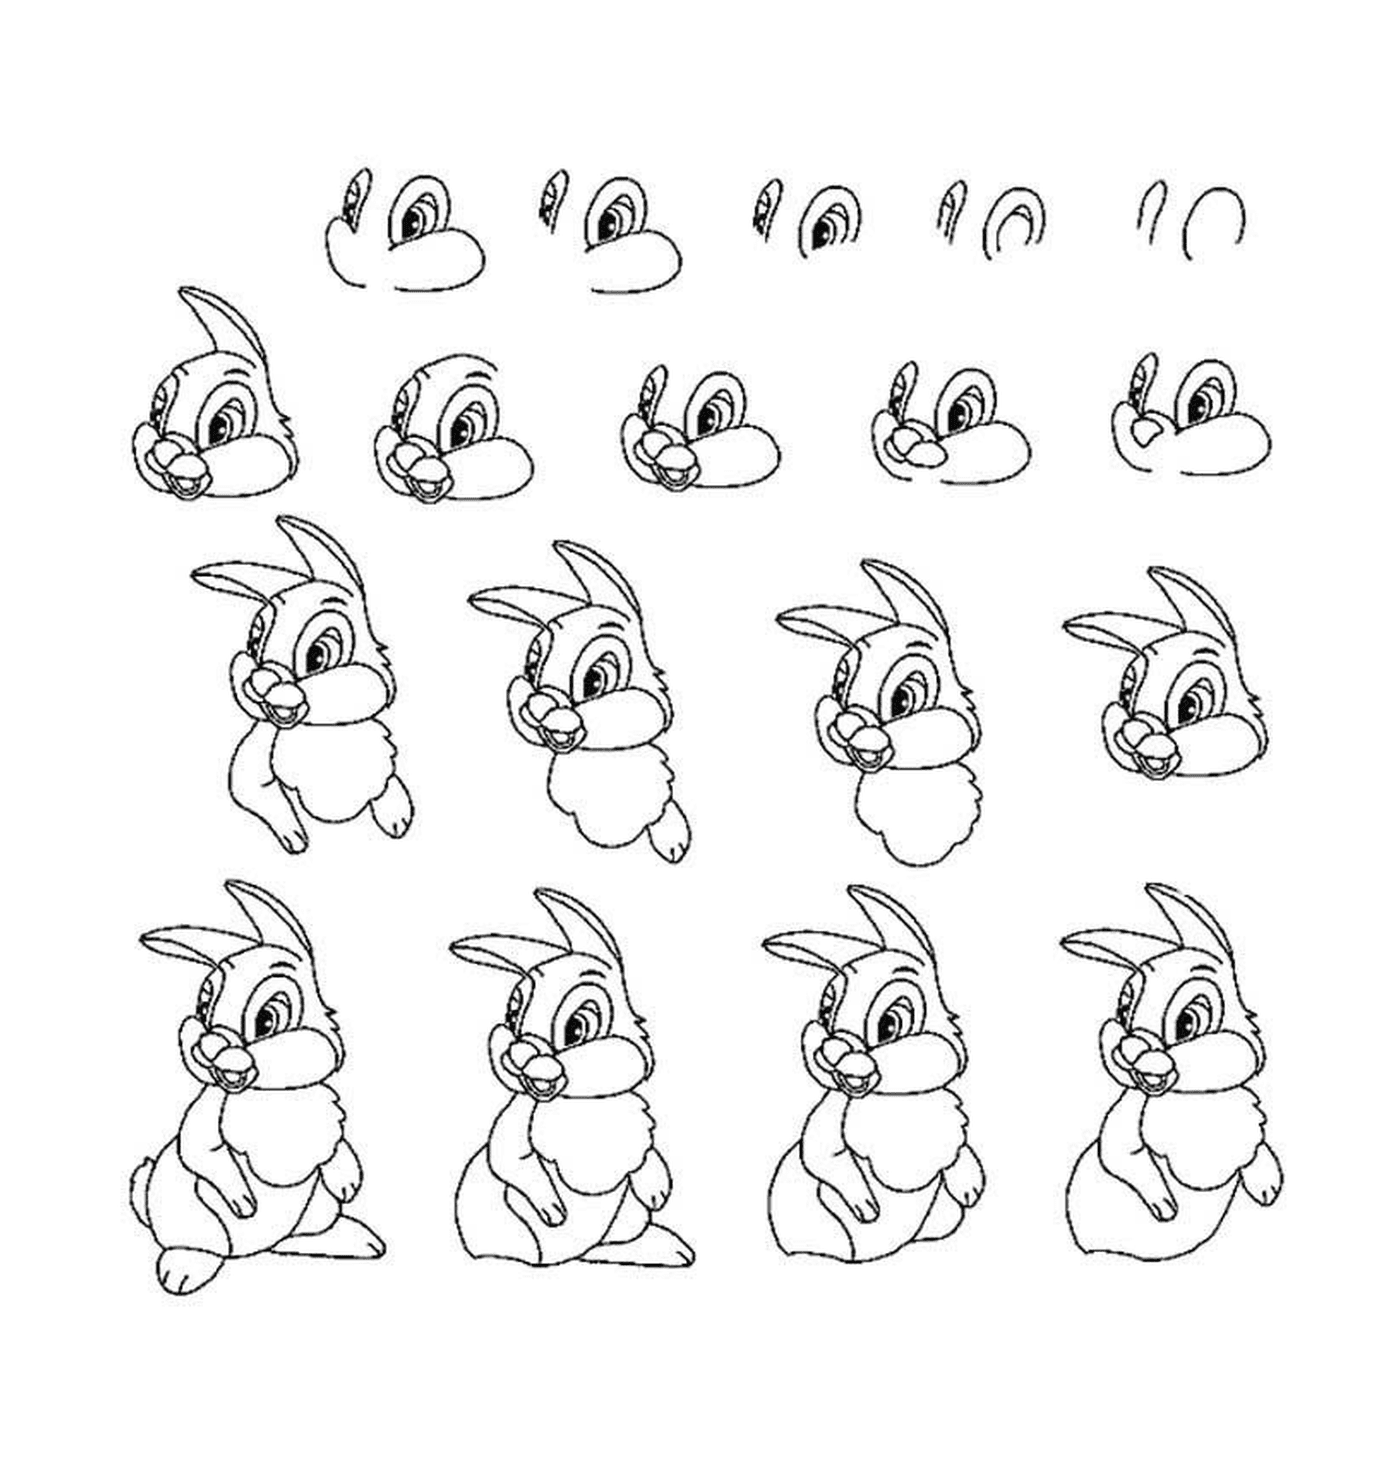  Diferentes poses de um coelho 